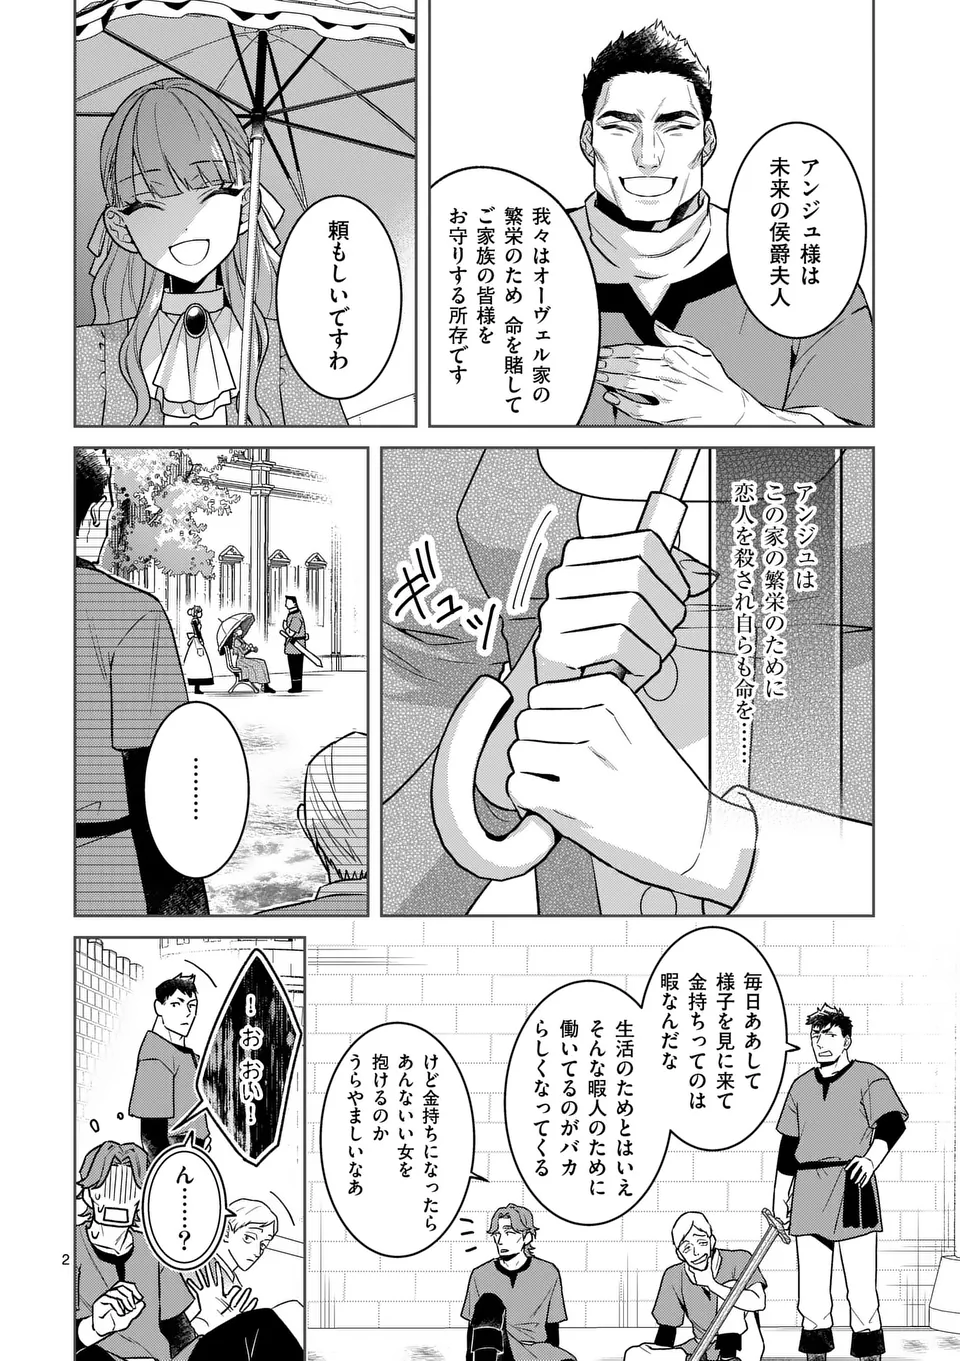 Nisemono Reijou no Fukushuu – Adauchi no Tame, 5-nin no Koushaku Reisoku no Konyakusha ni narimasu - Chapter 4.1 - Page 2